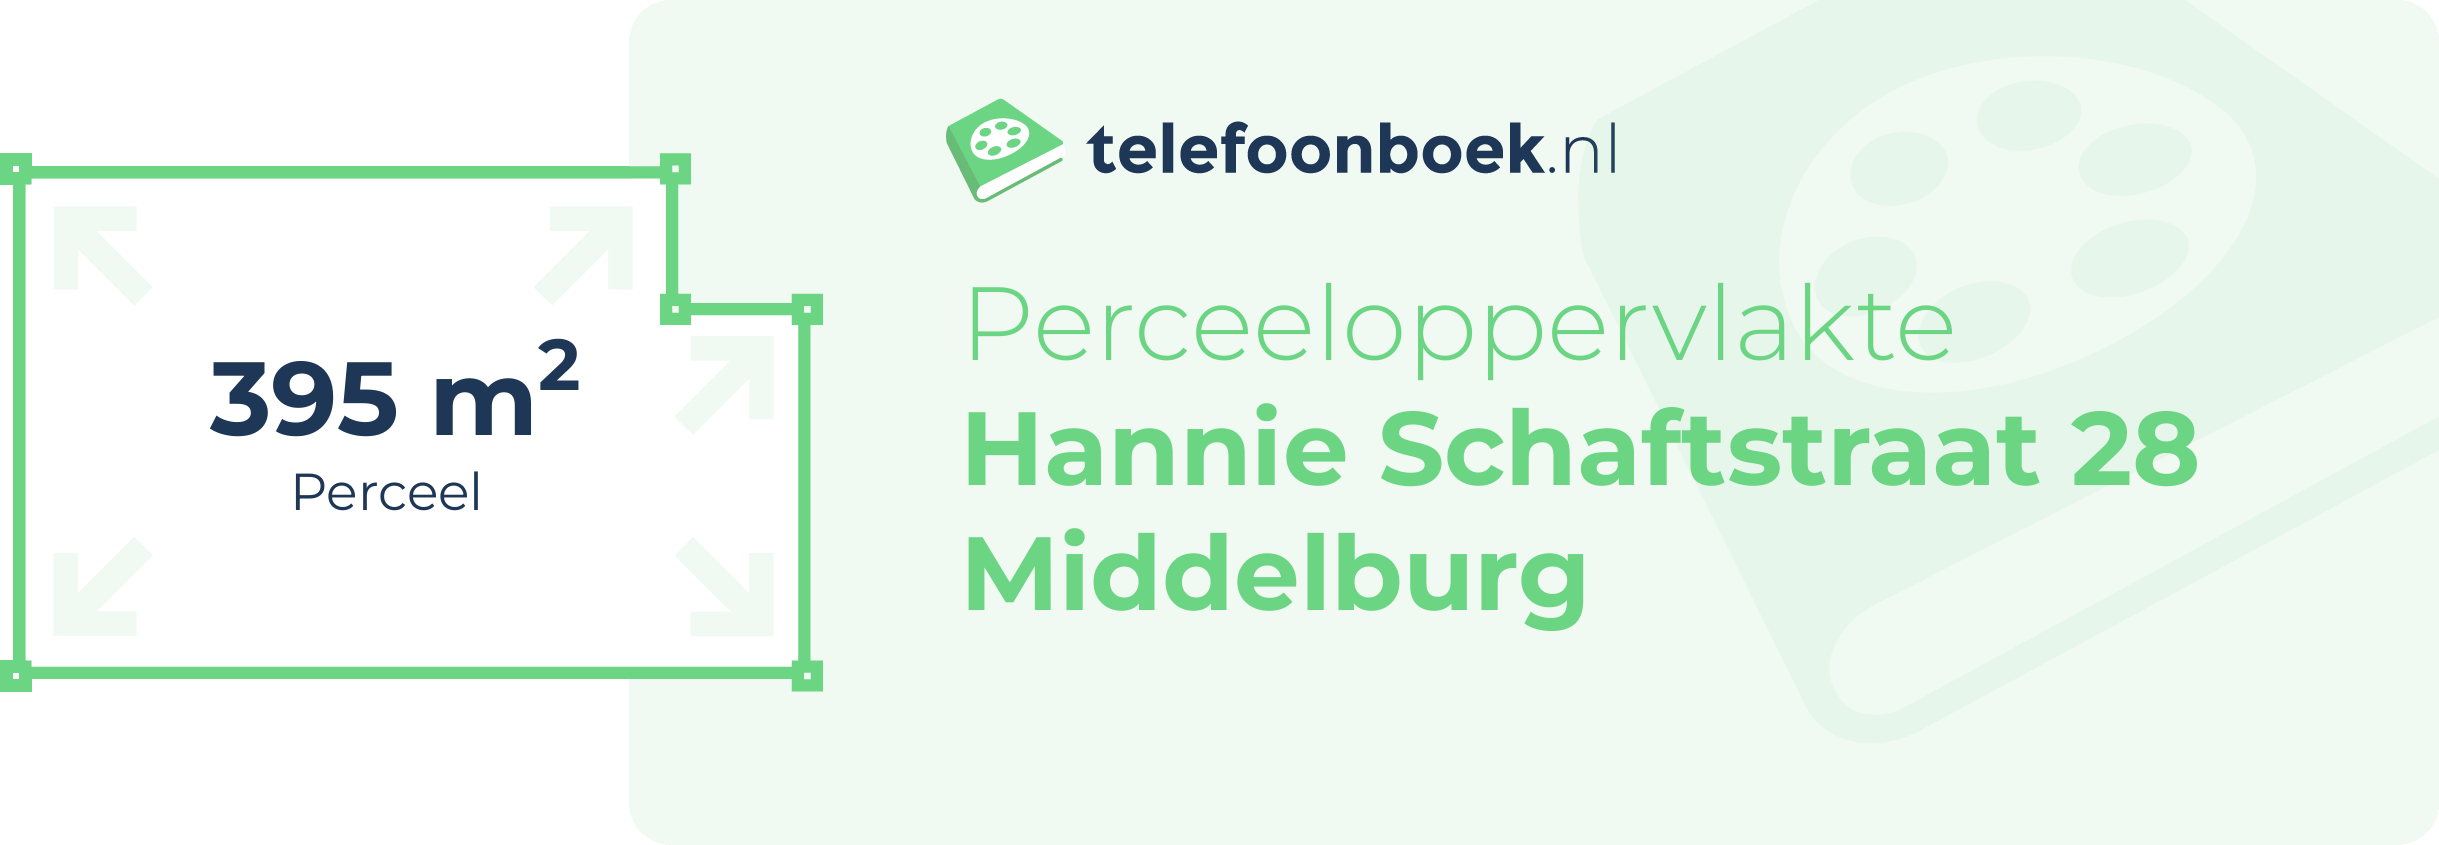 Perceeloppervlakte Hannie Schaftstraat 28 Middelburg